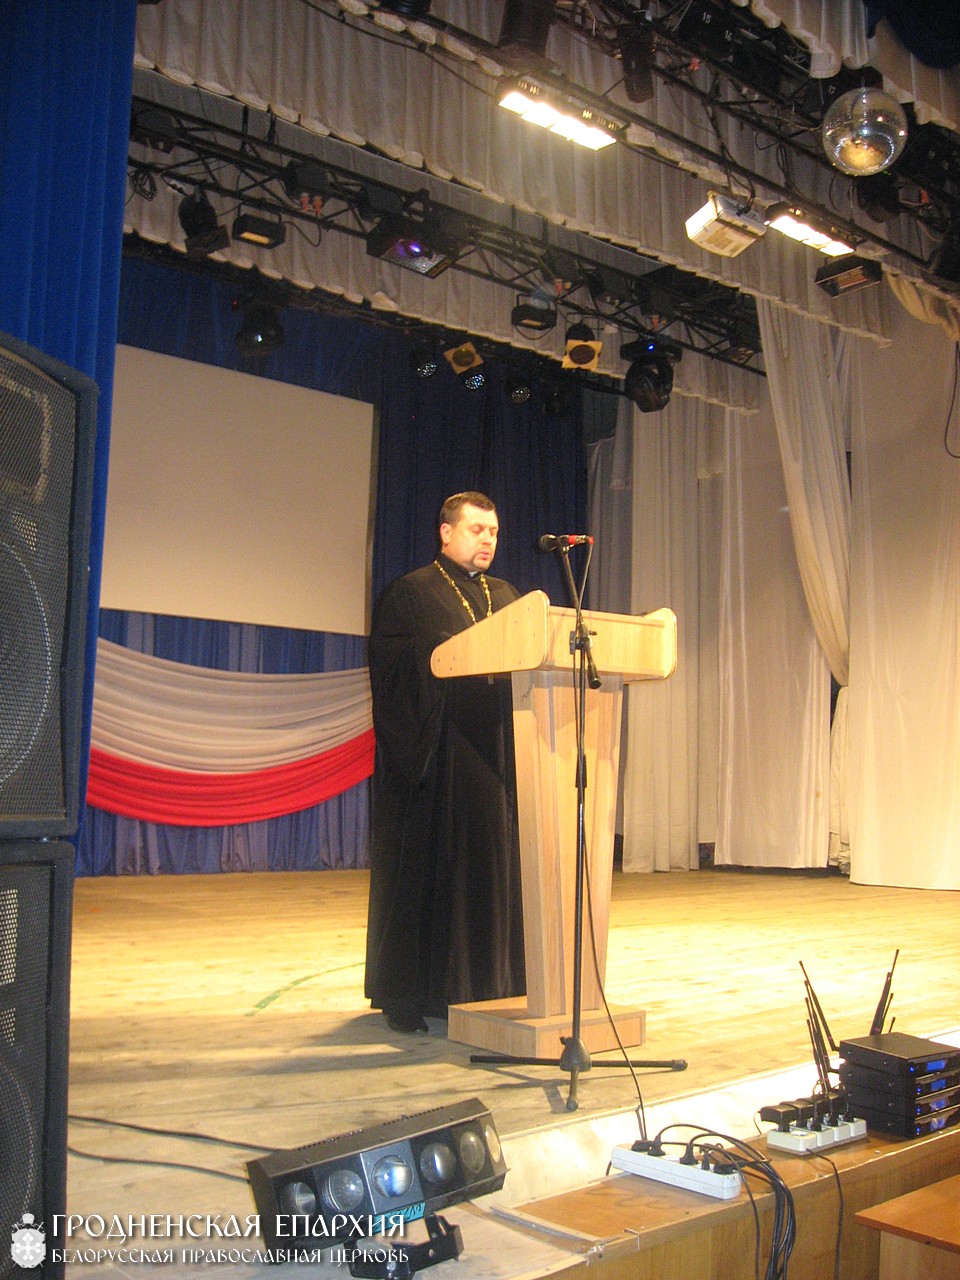 21 мая 2015 года. Священник принял участие в профилактическом мероприятии в Доме культуры города Волковыска